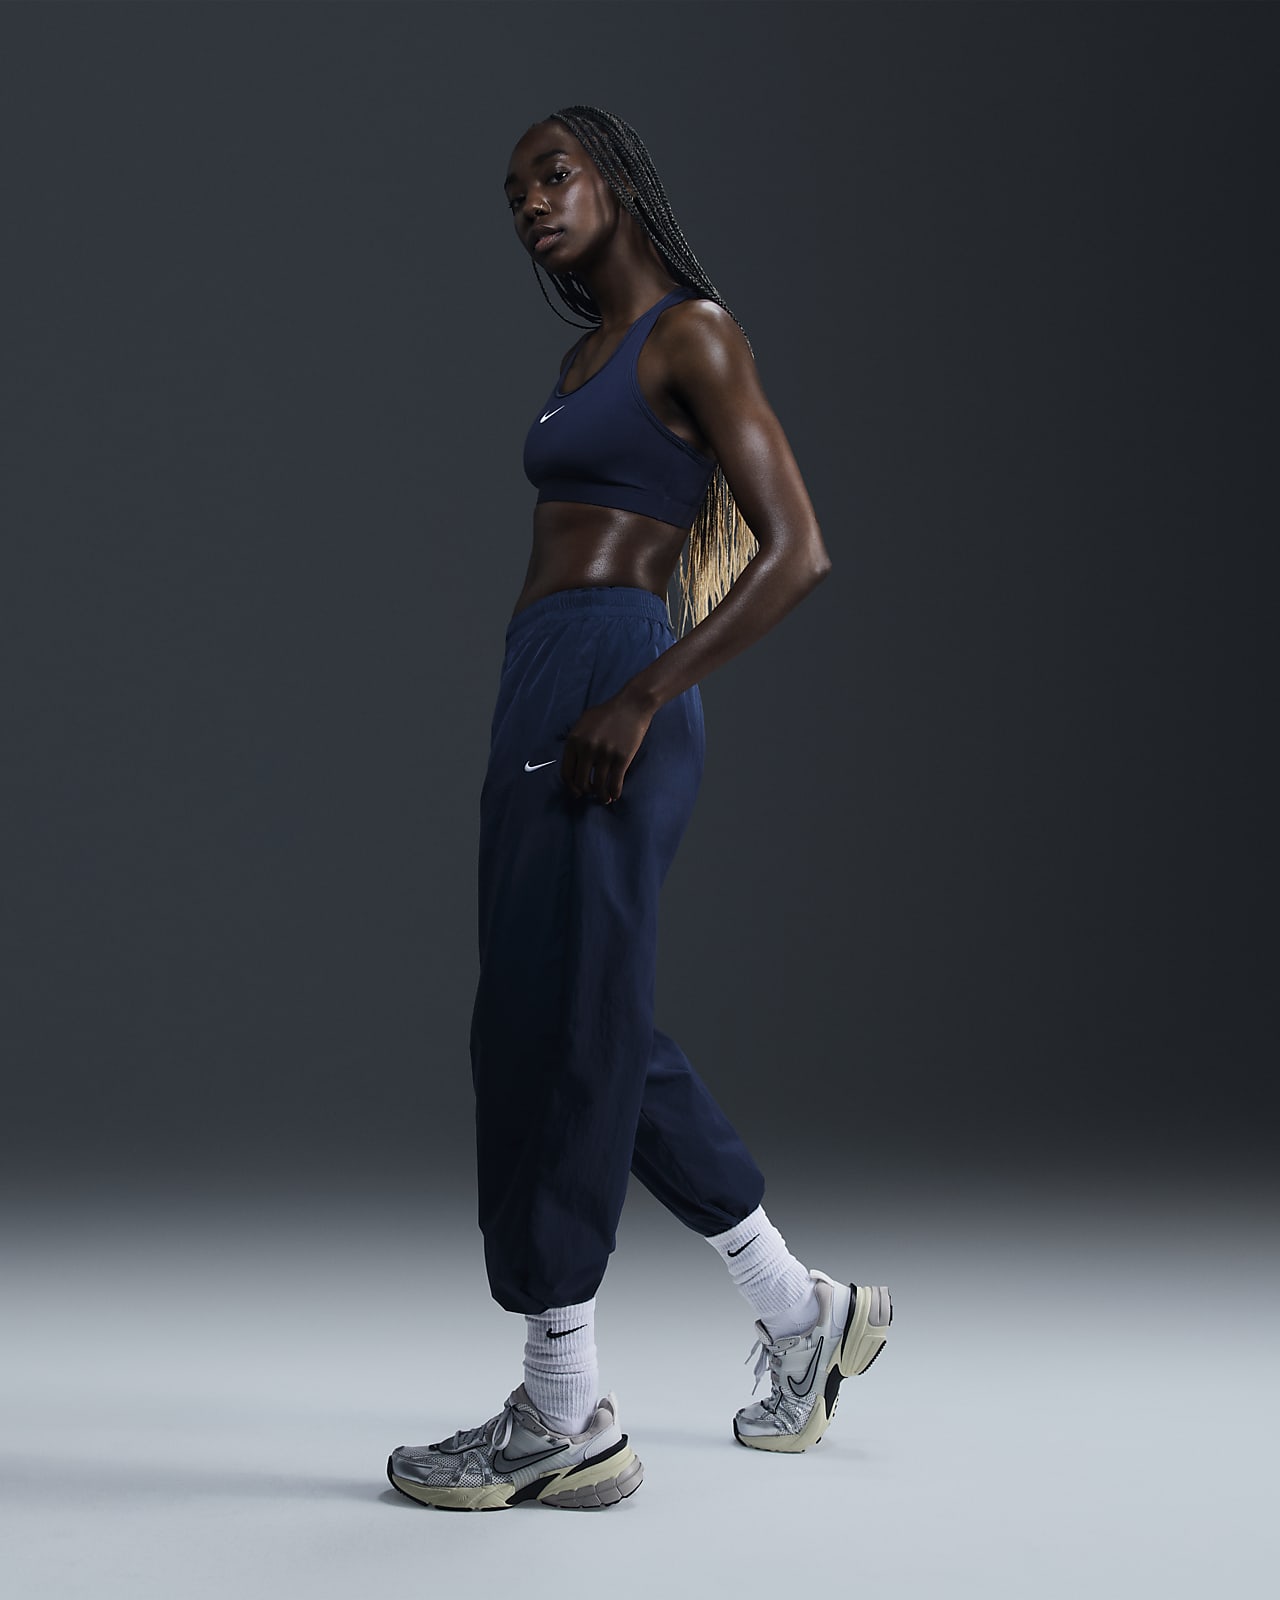 Nike Sportswear Essential Women's Mid-Rise Oversized Woven Joggers